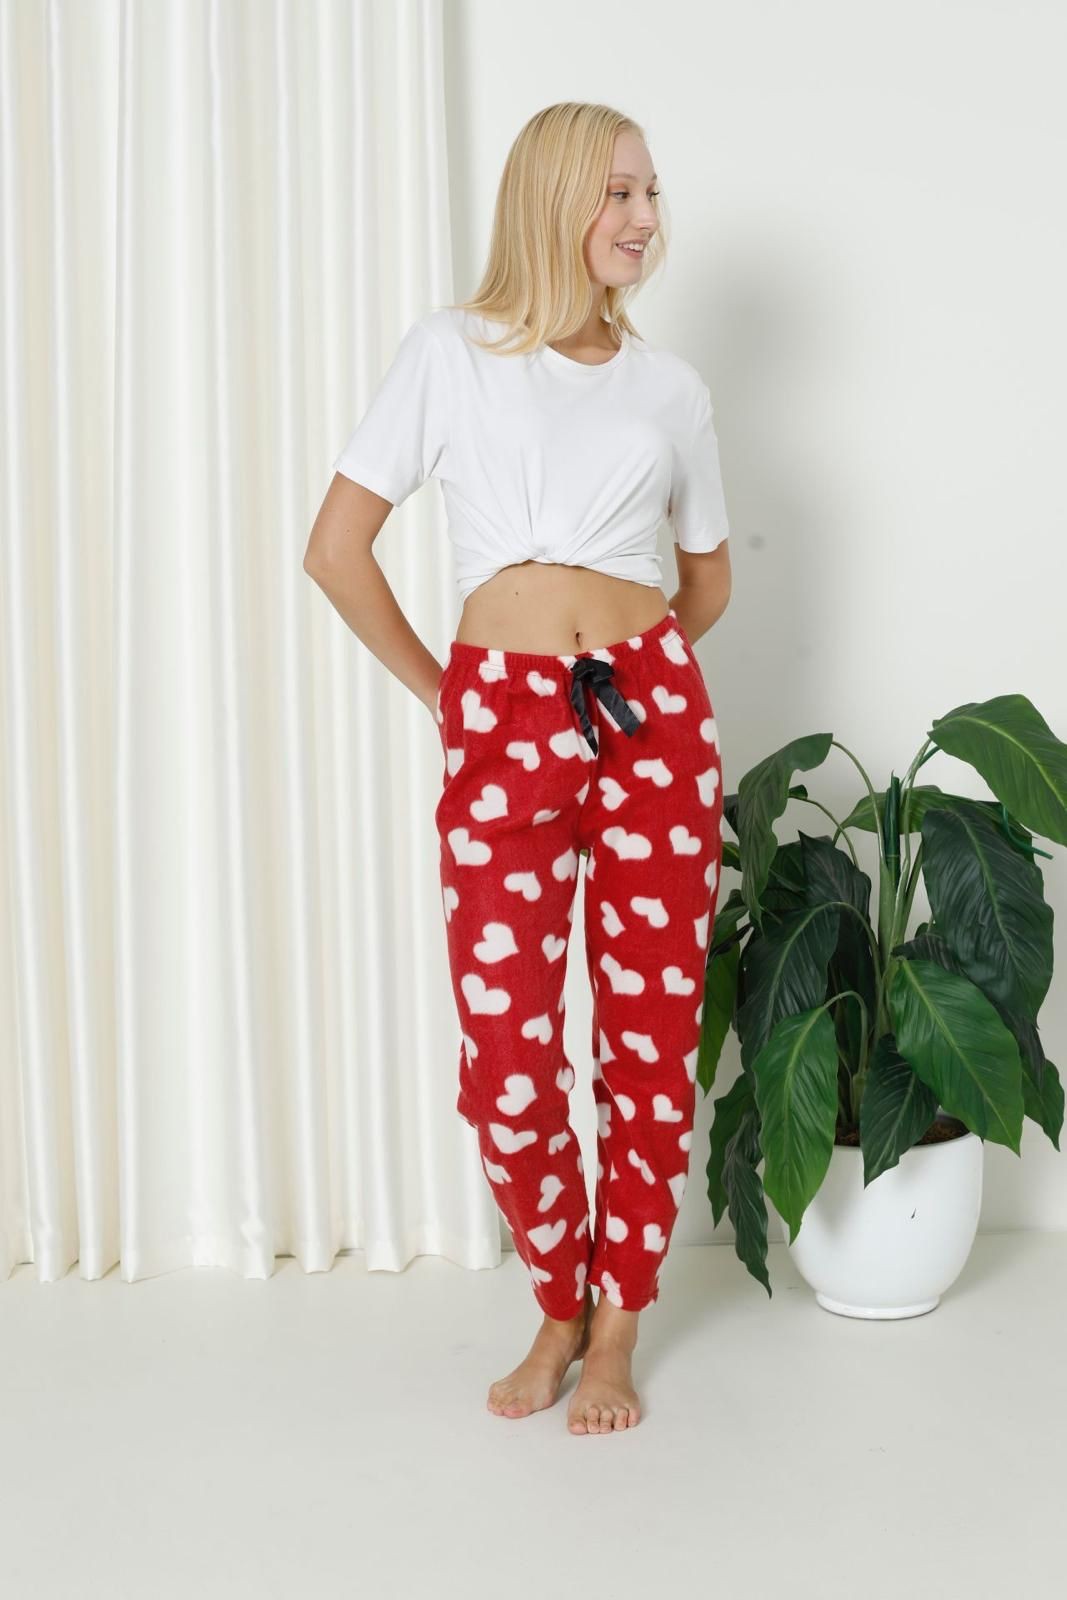 Luxury Soft Welsoft Polar Desenli Kurdeleli Kışlık Pijama Altı Pantolon - Kırmızı